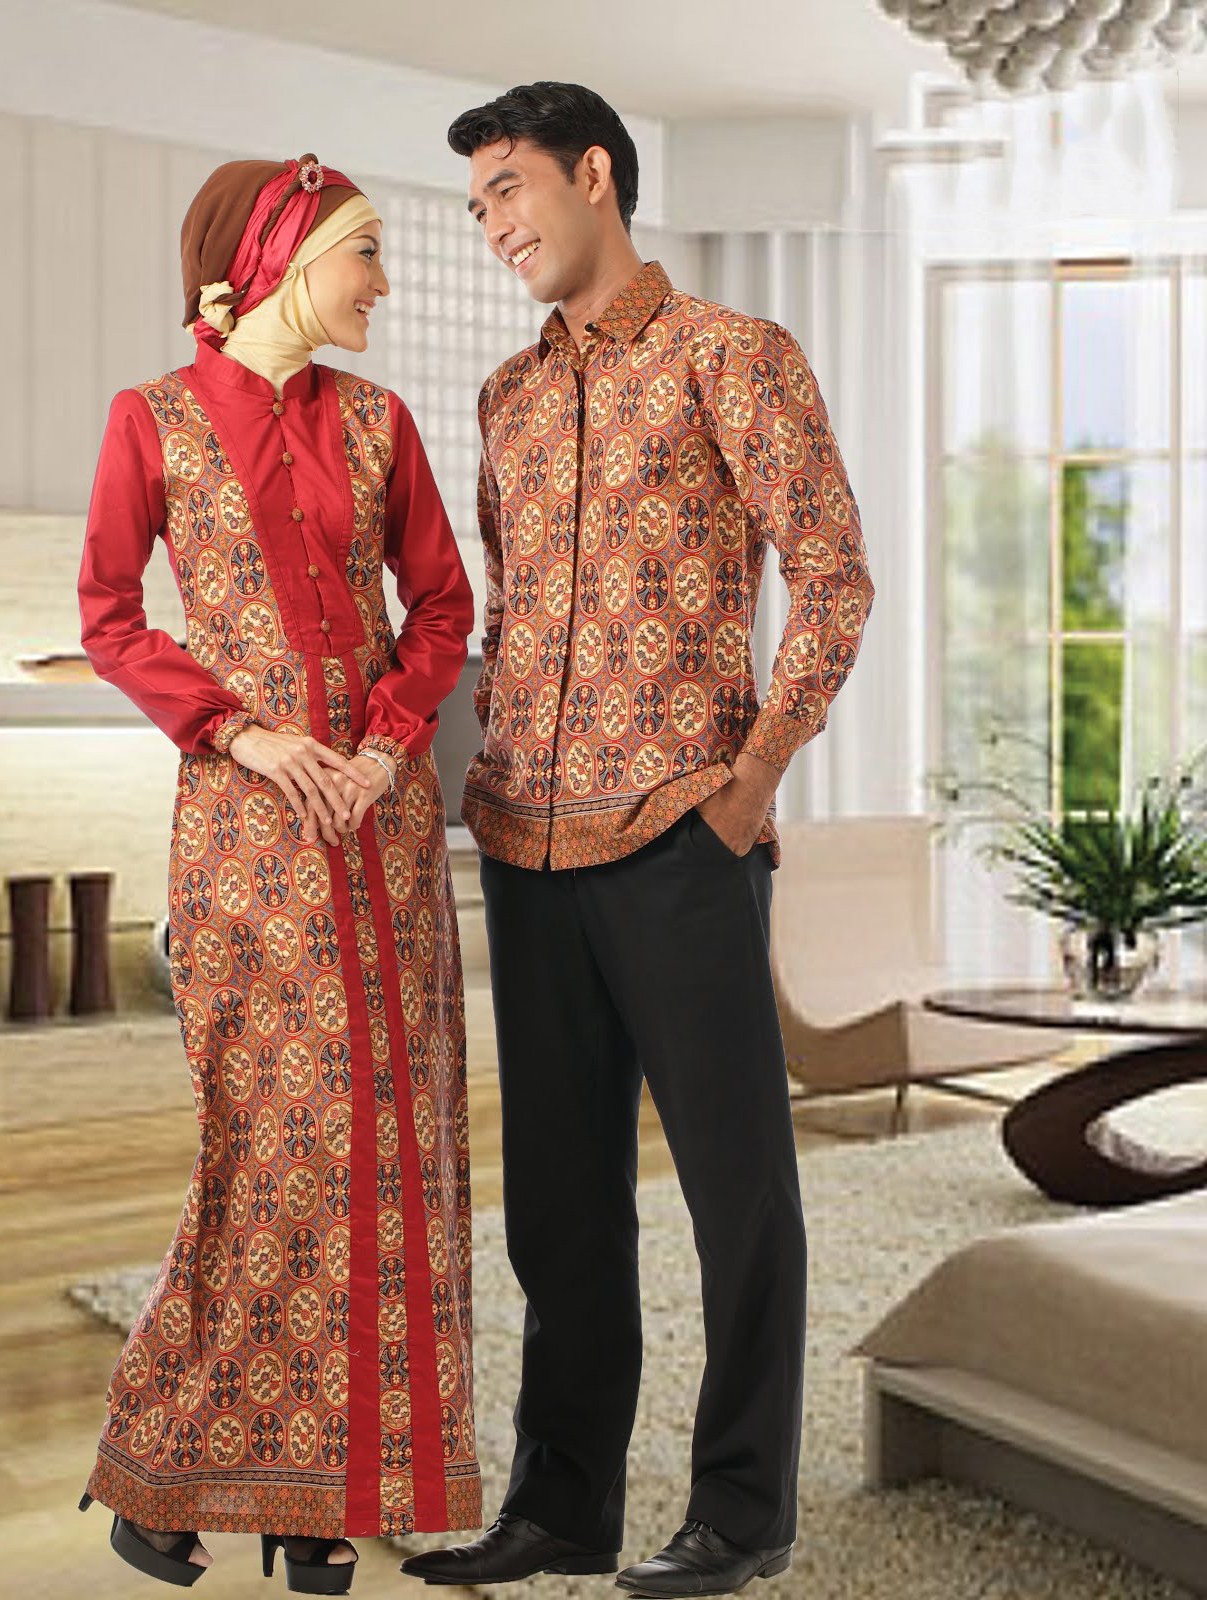 Ide Lihat Baju Lebaran Wddj Trend Model Baju Batik Lebaran Terbaru 2013